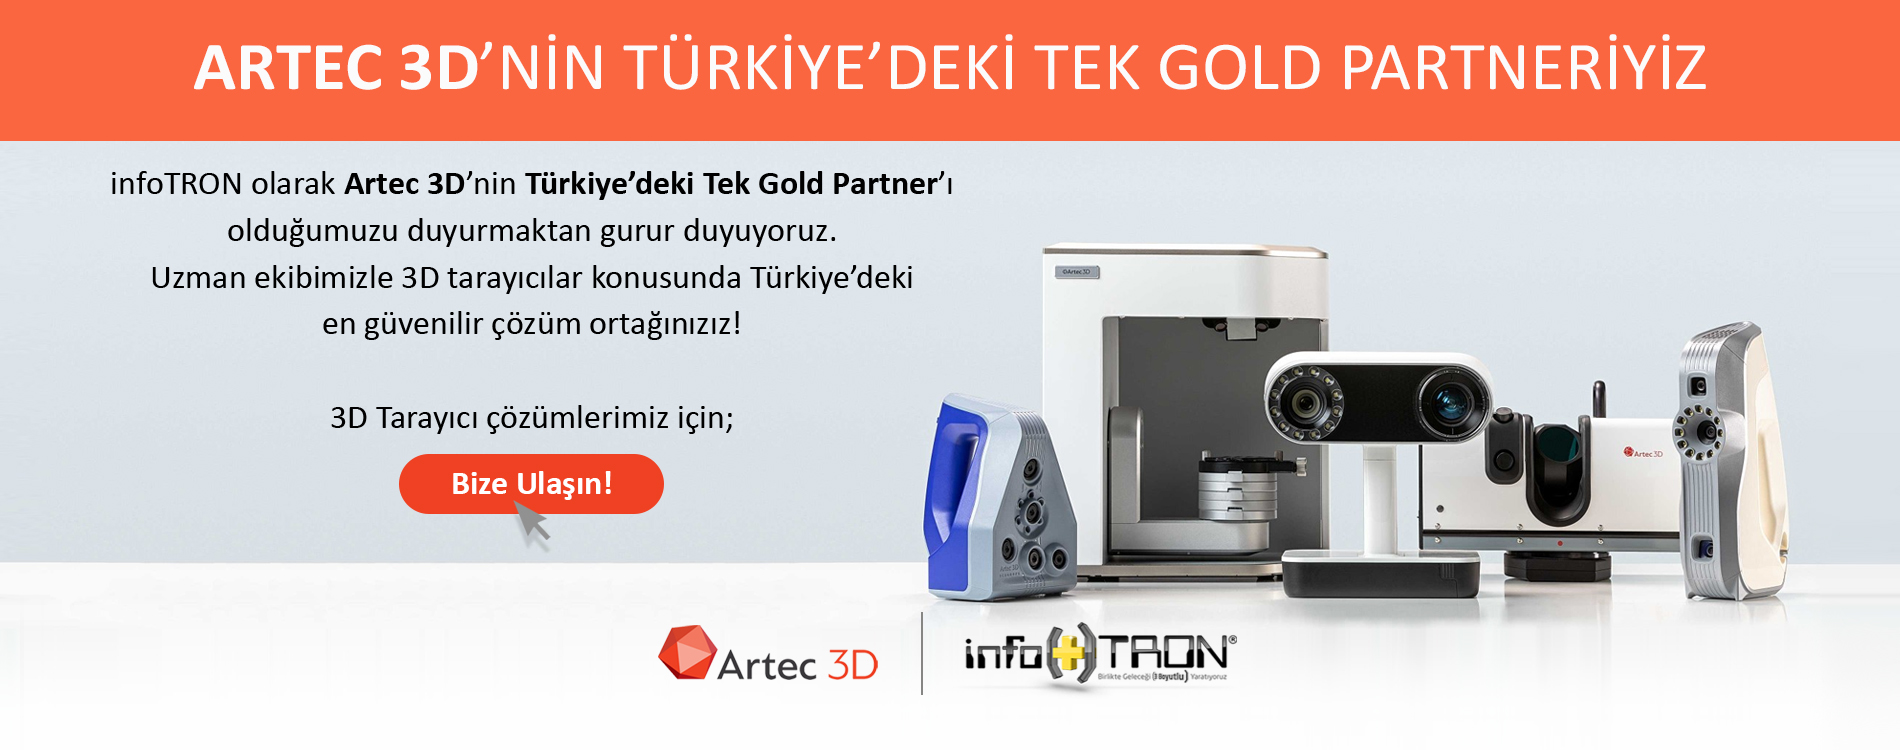 infoTRON olarak Artec 3D’nin Türkiye’deki Tek Gold Partner’ı olduğumuzu duyurmaktan gurur duyuyoruz.